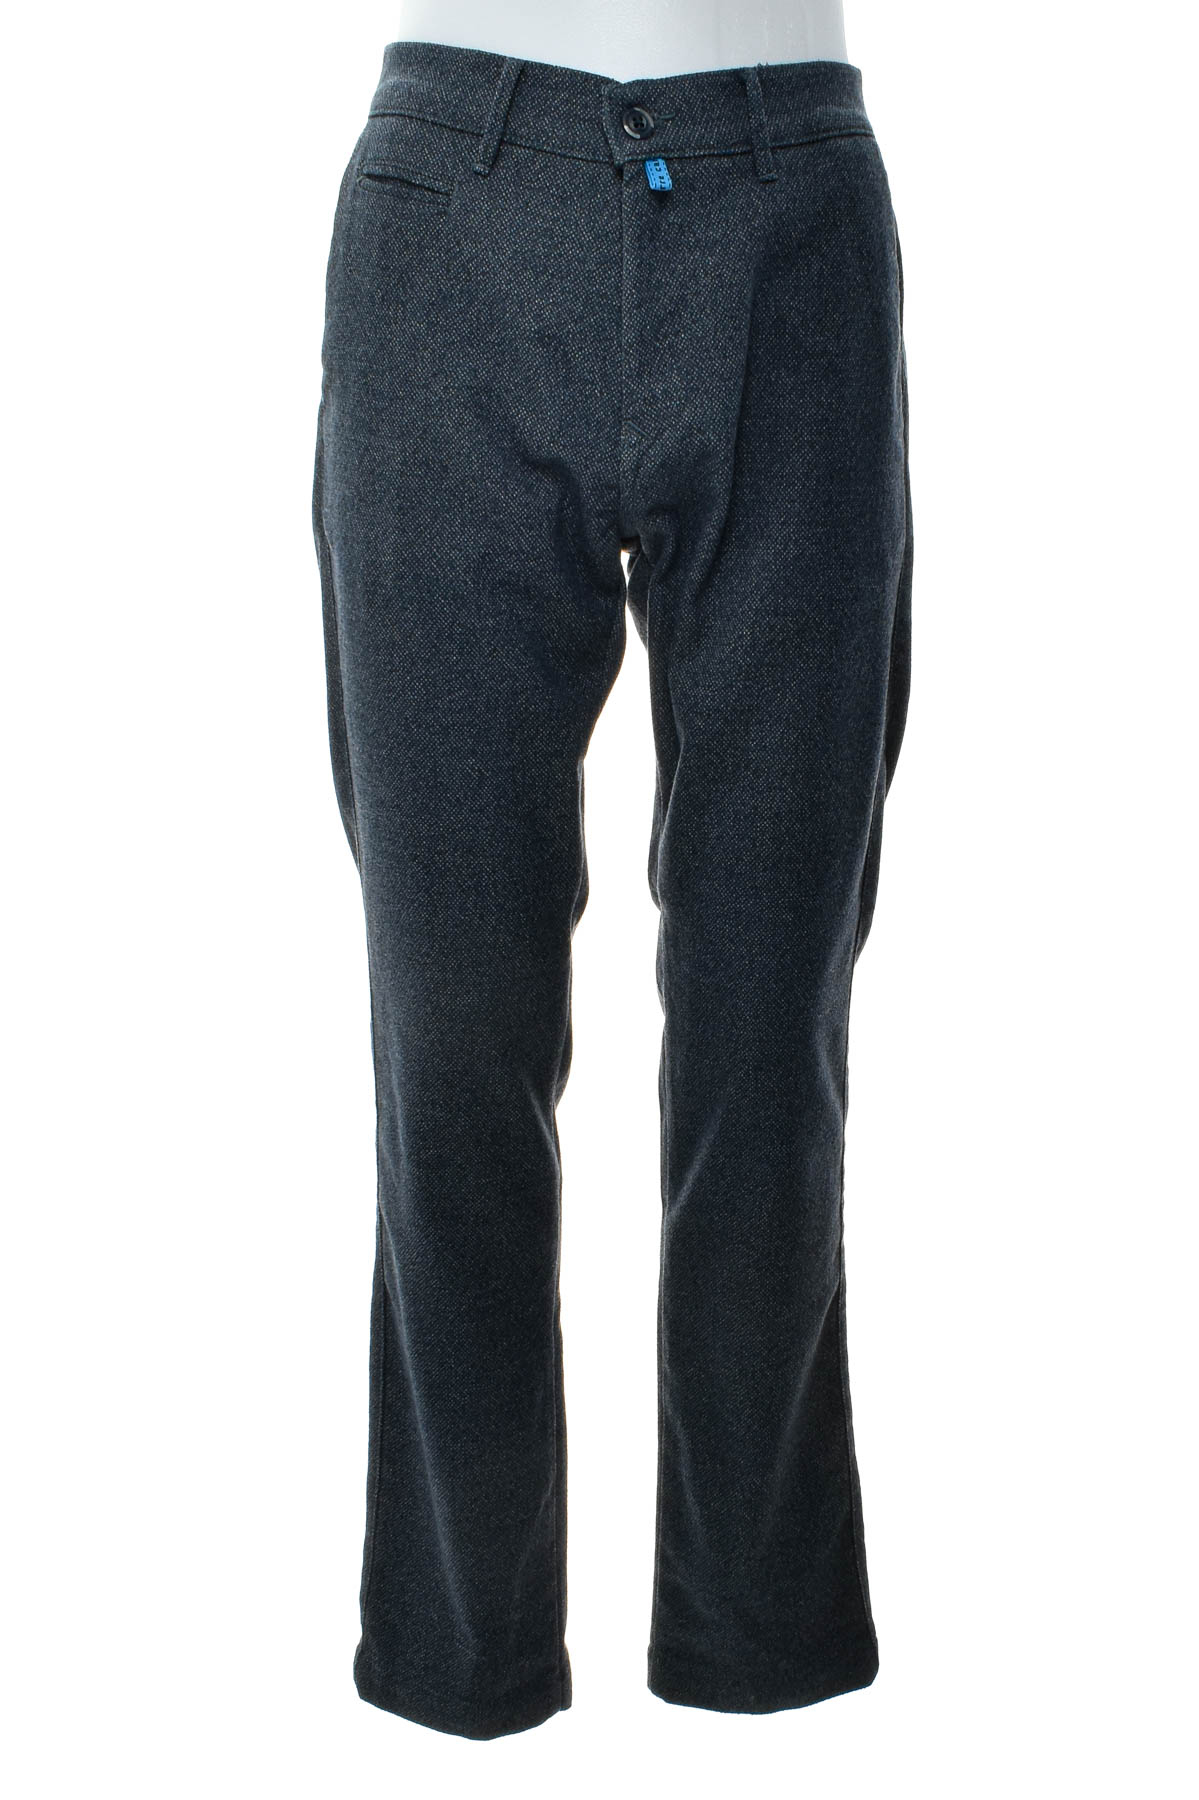 Men's trousers - Birmingham Wear - 0